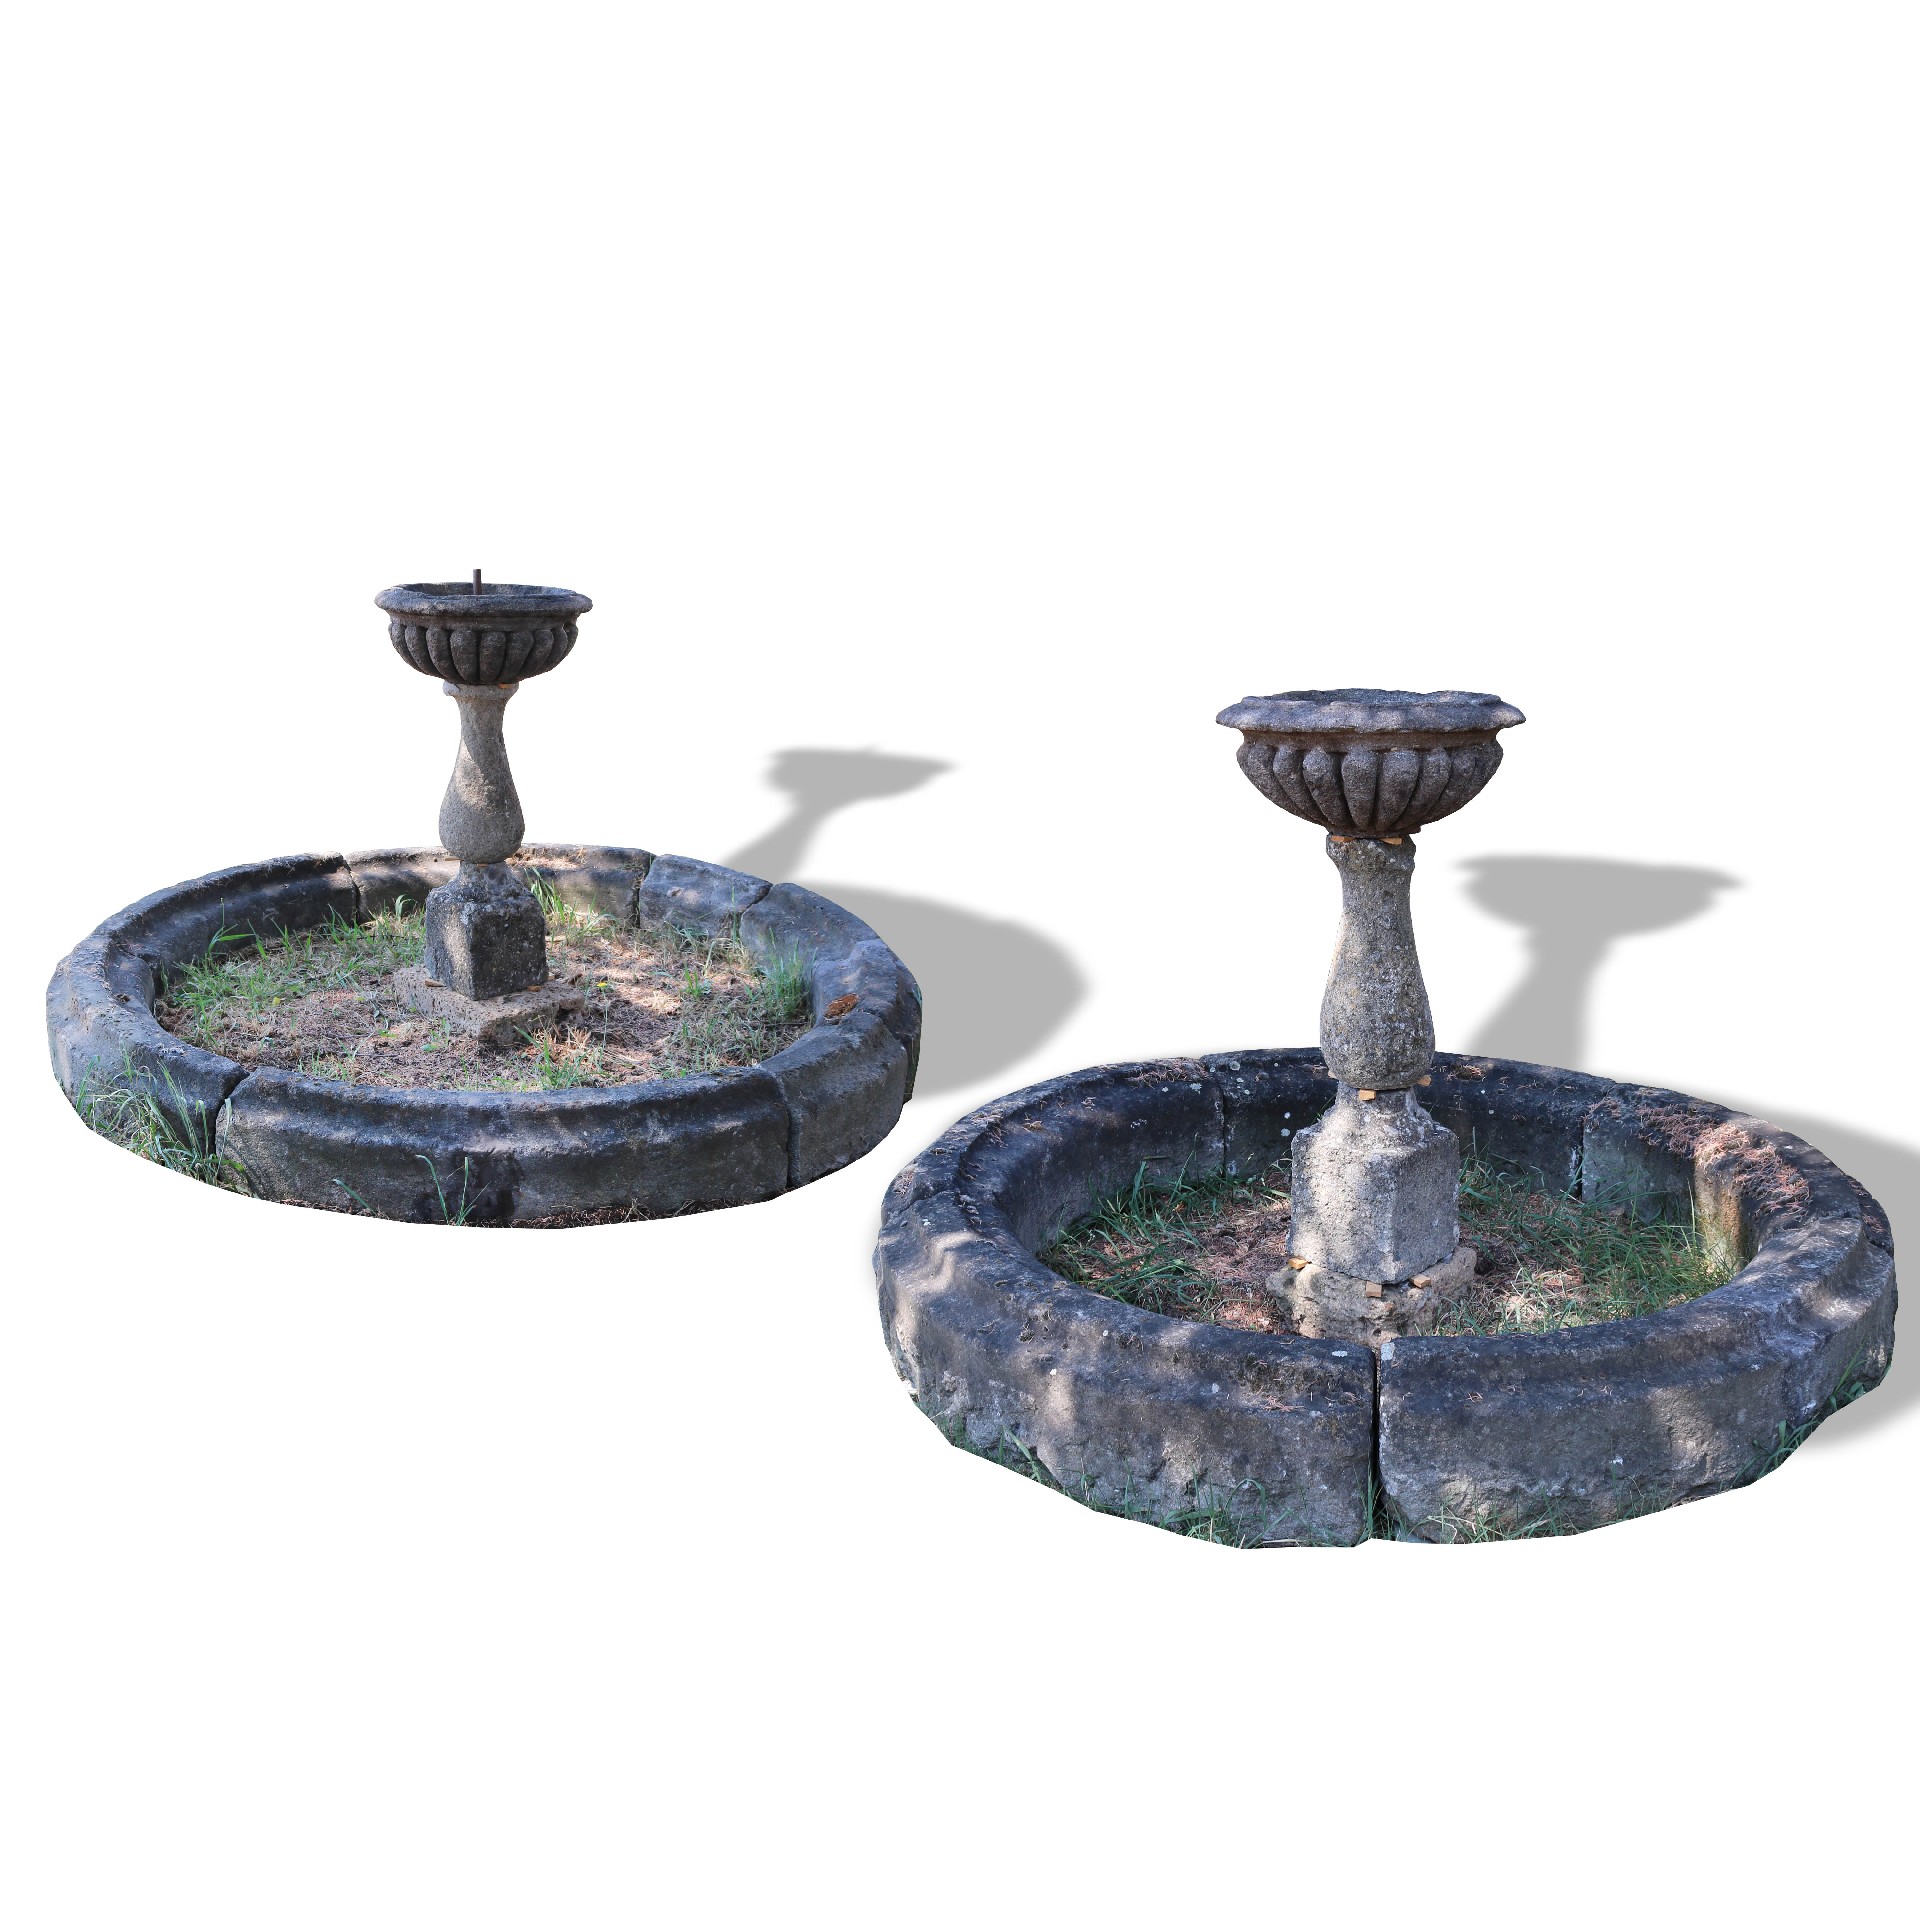 Coppia di antiche fontane in pietra. - Fontane Antiche - Arredo Giardino - Prodotti - Antichità Fiorillo